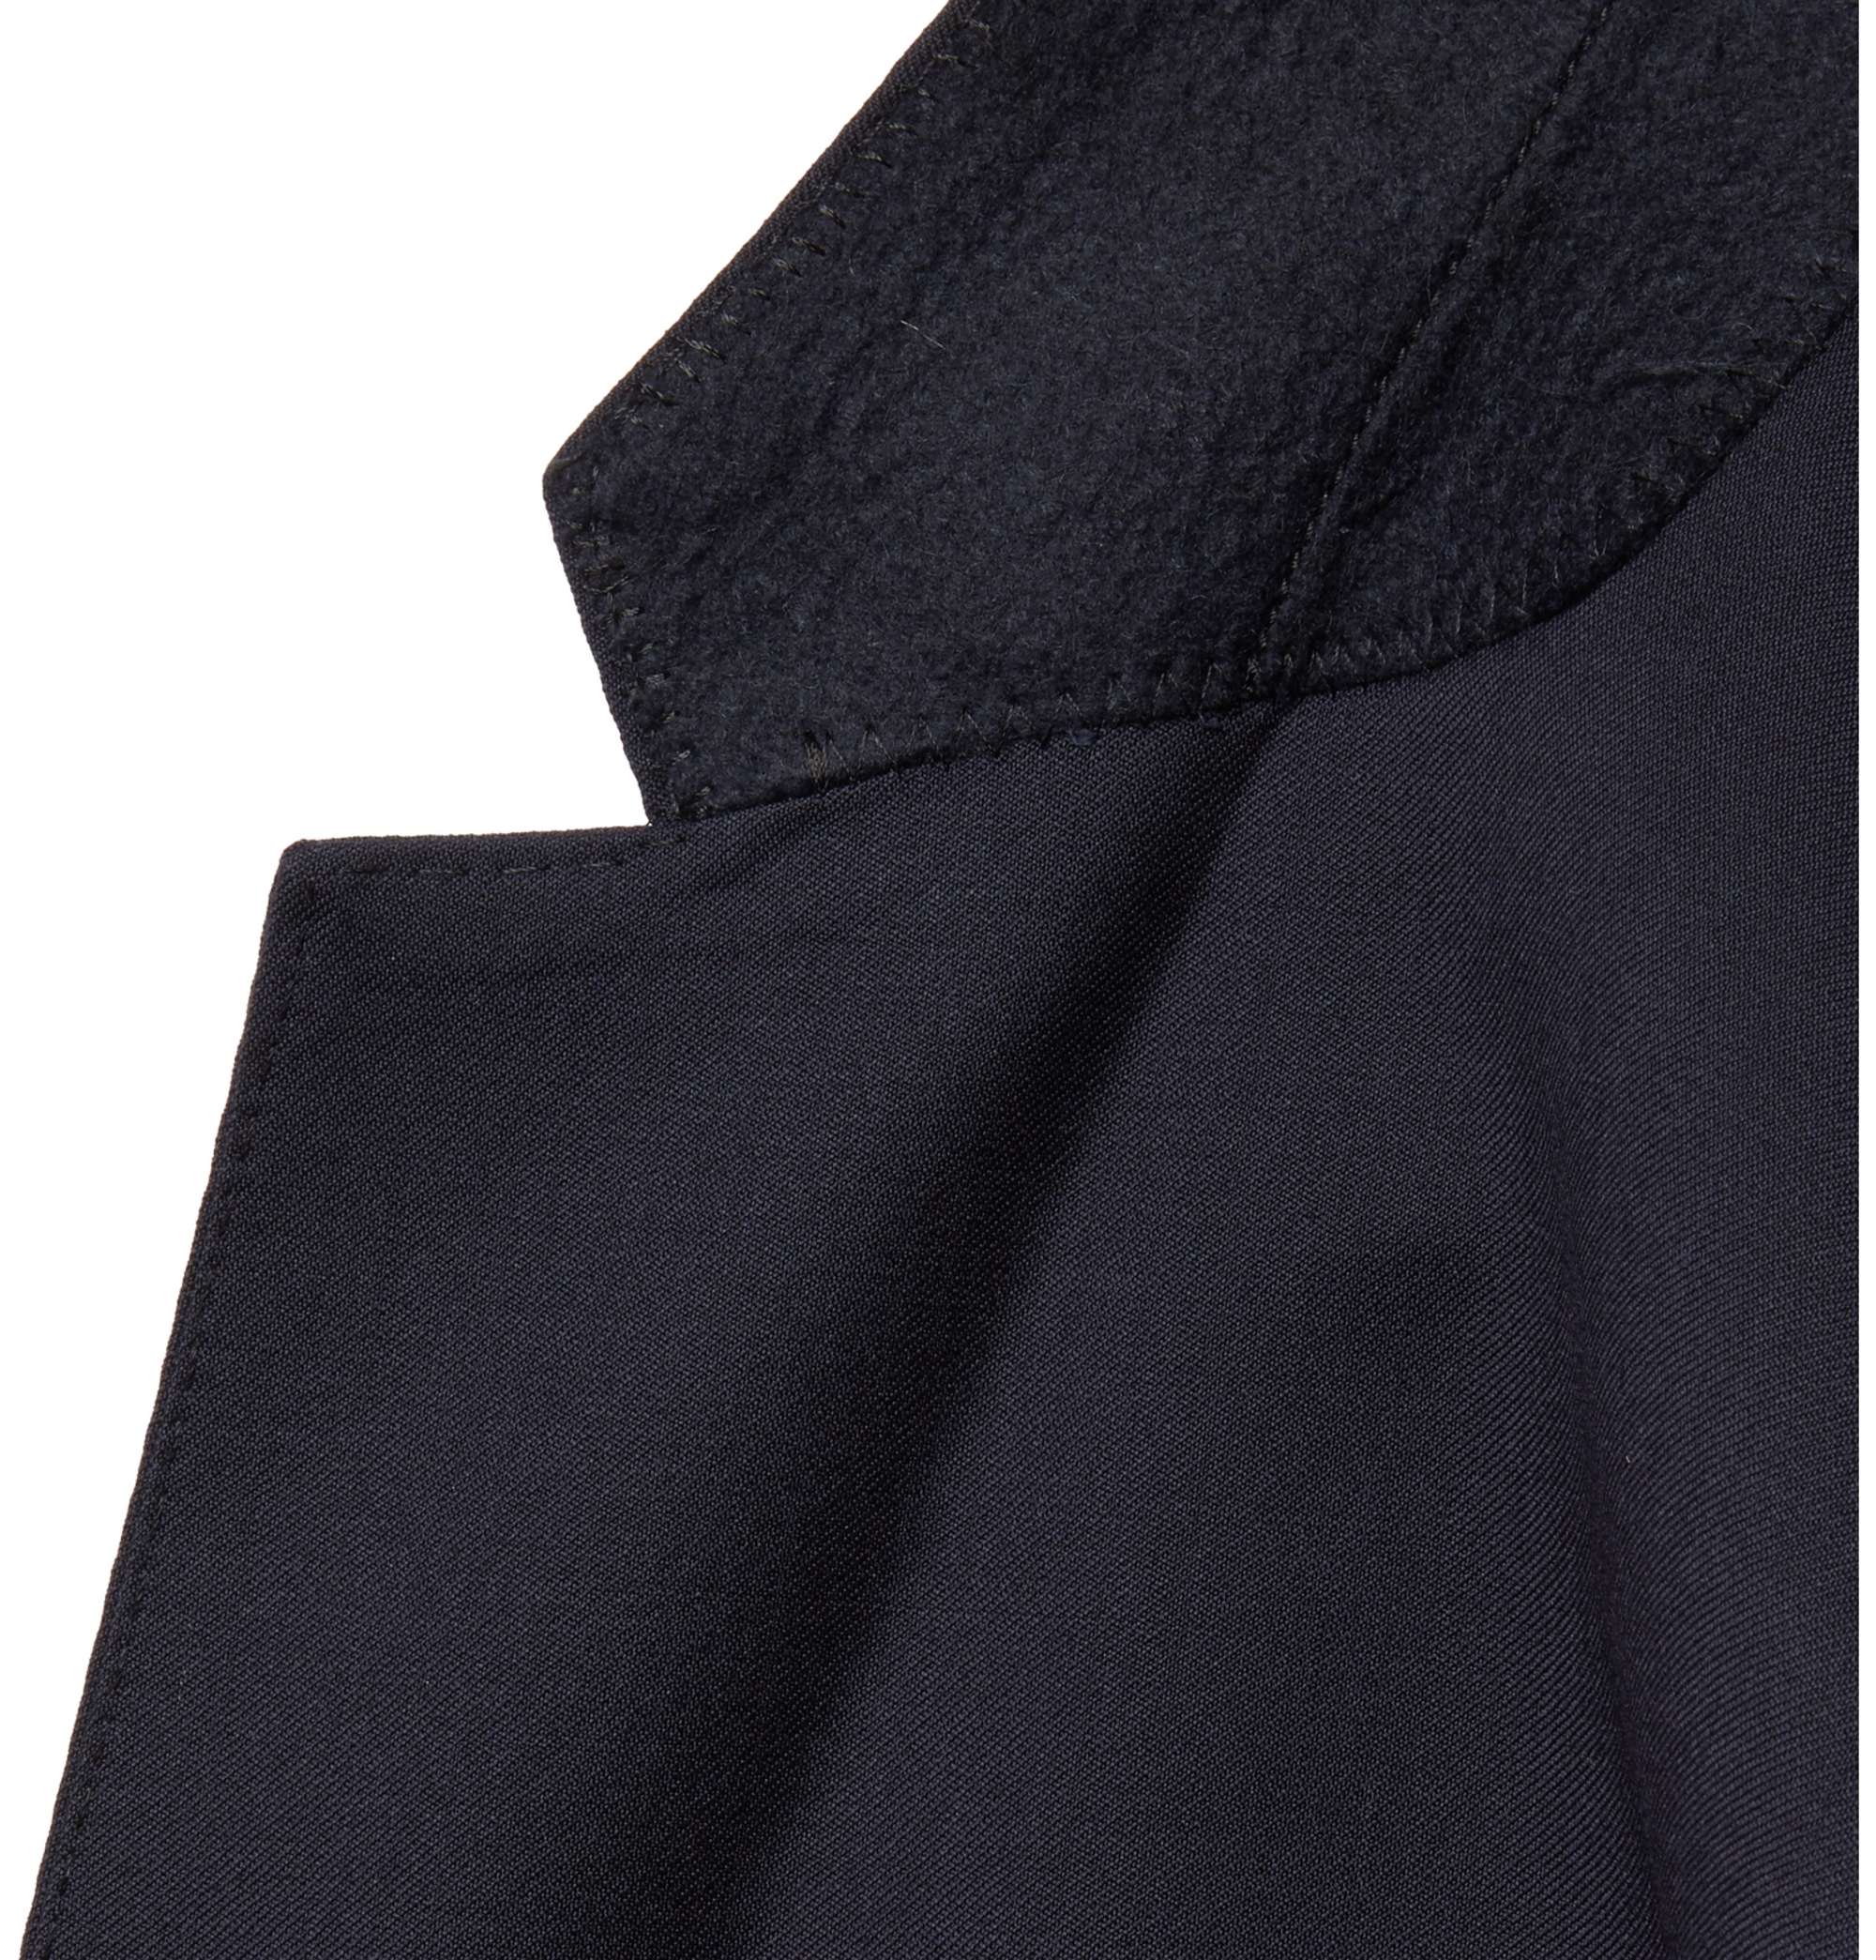 HUGO BOSS Grey Hayes Slim-Fit Super 120s Virgin Wool Suit Jacket